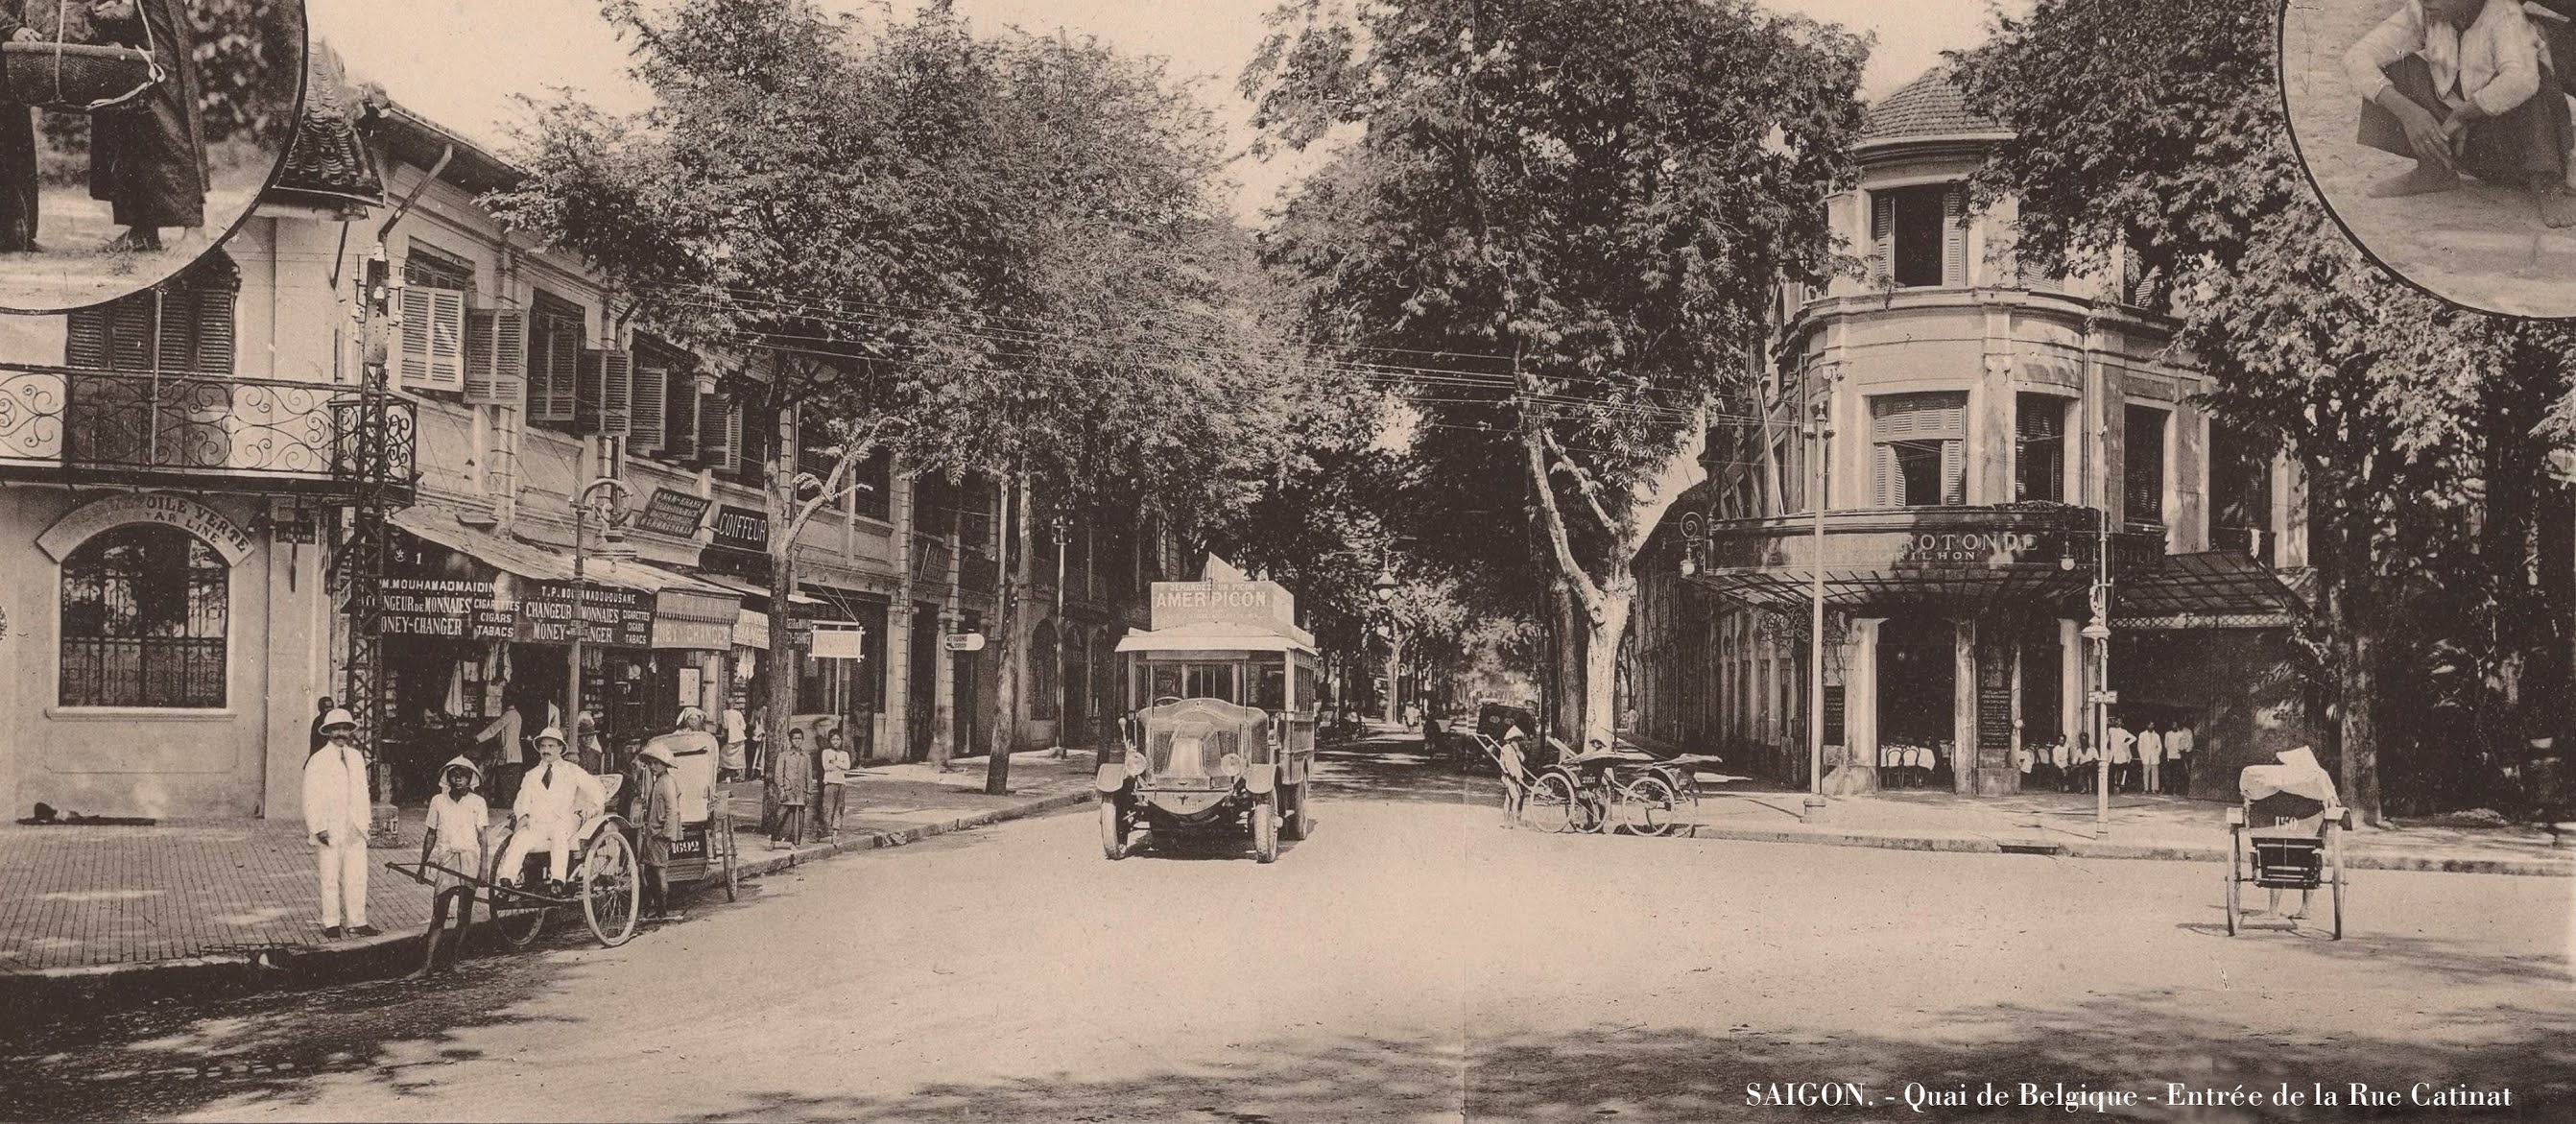 Hình ảnh Việt Nam xưa: Đường phố Sài Gòn cách nay đúng 1 thế kỷ (1921 - 2021)